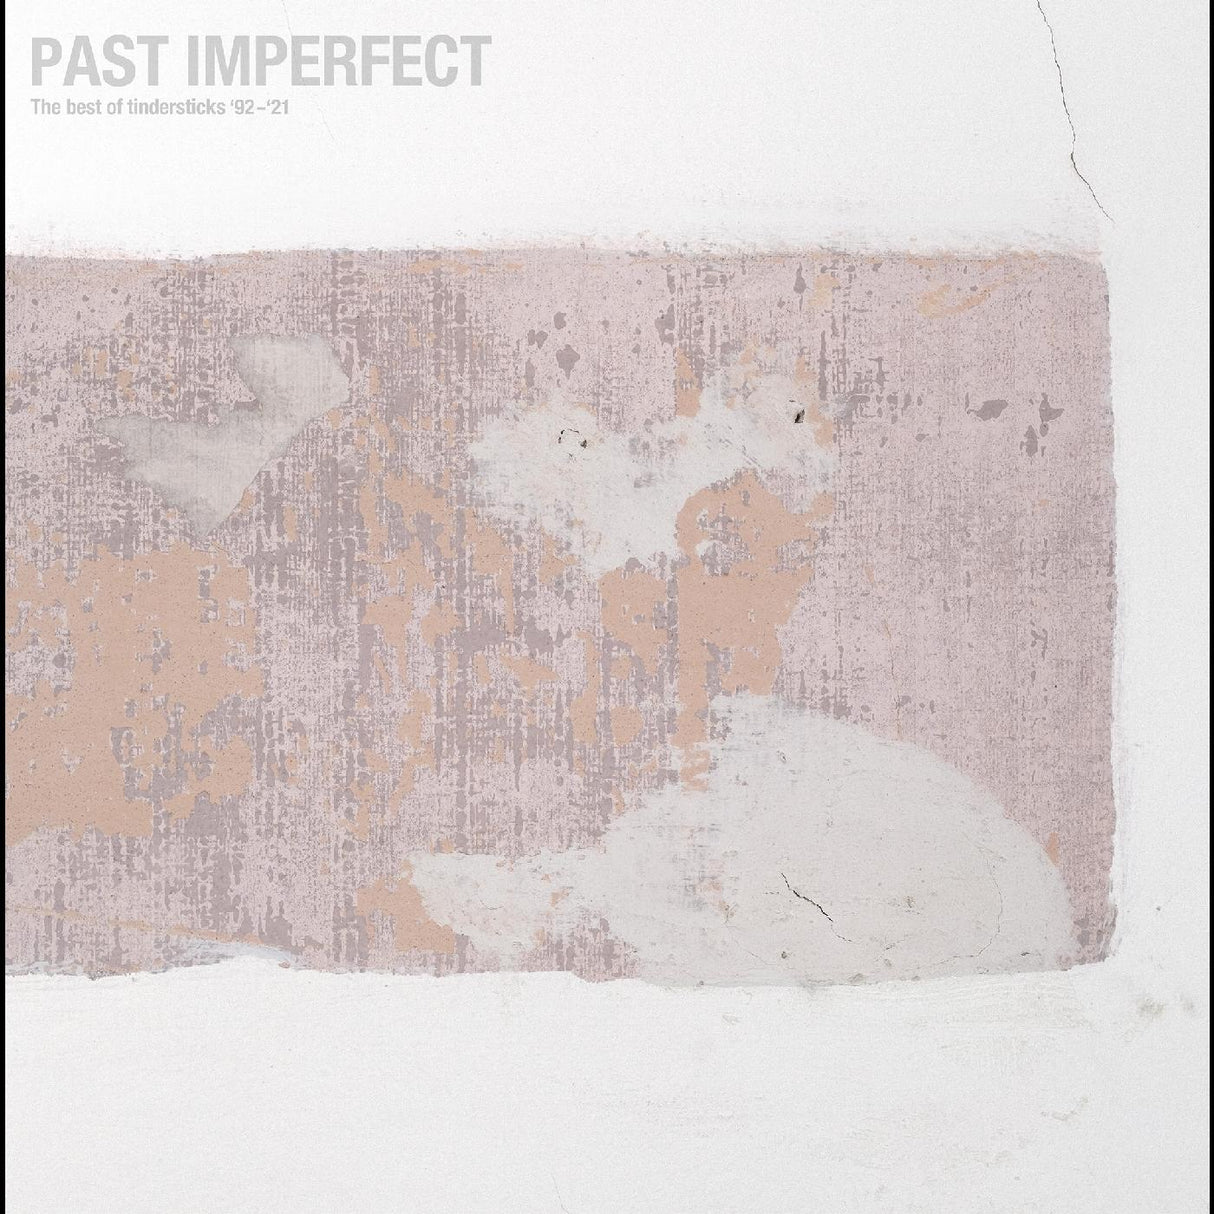 Tindersticks - PAST IMPERFECT the best of tindersticks ‚Äô92 - ‚Äô21 [Vinyl]